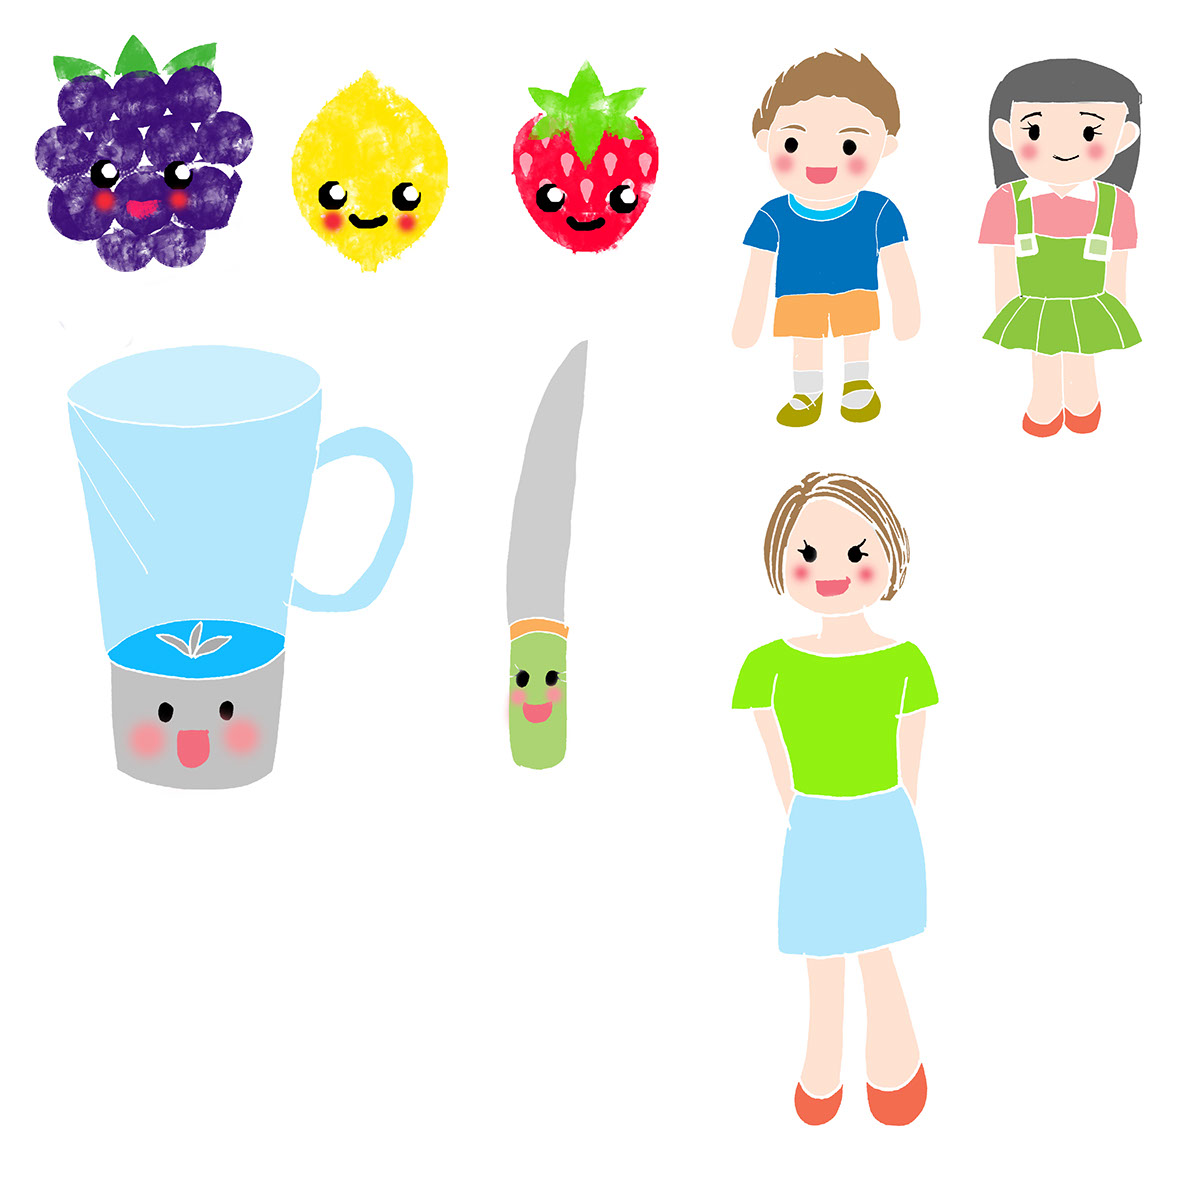 juice blendy knify Popup pop-up children cute kawaii Fruit fruitarian gardenjuice characterdesign